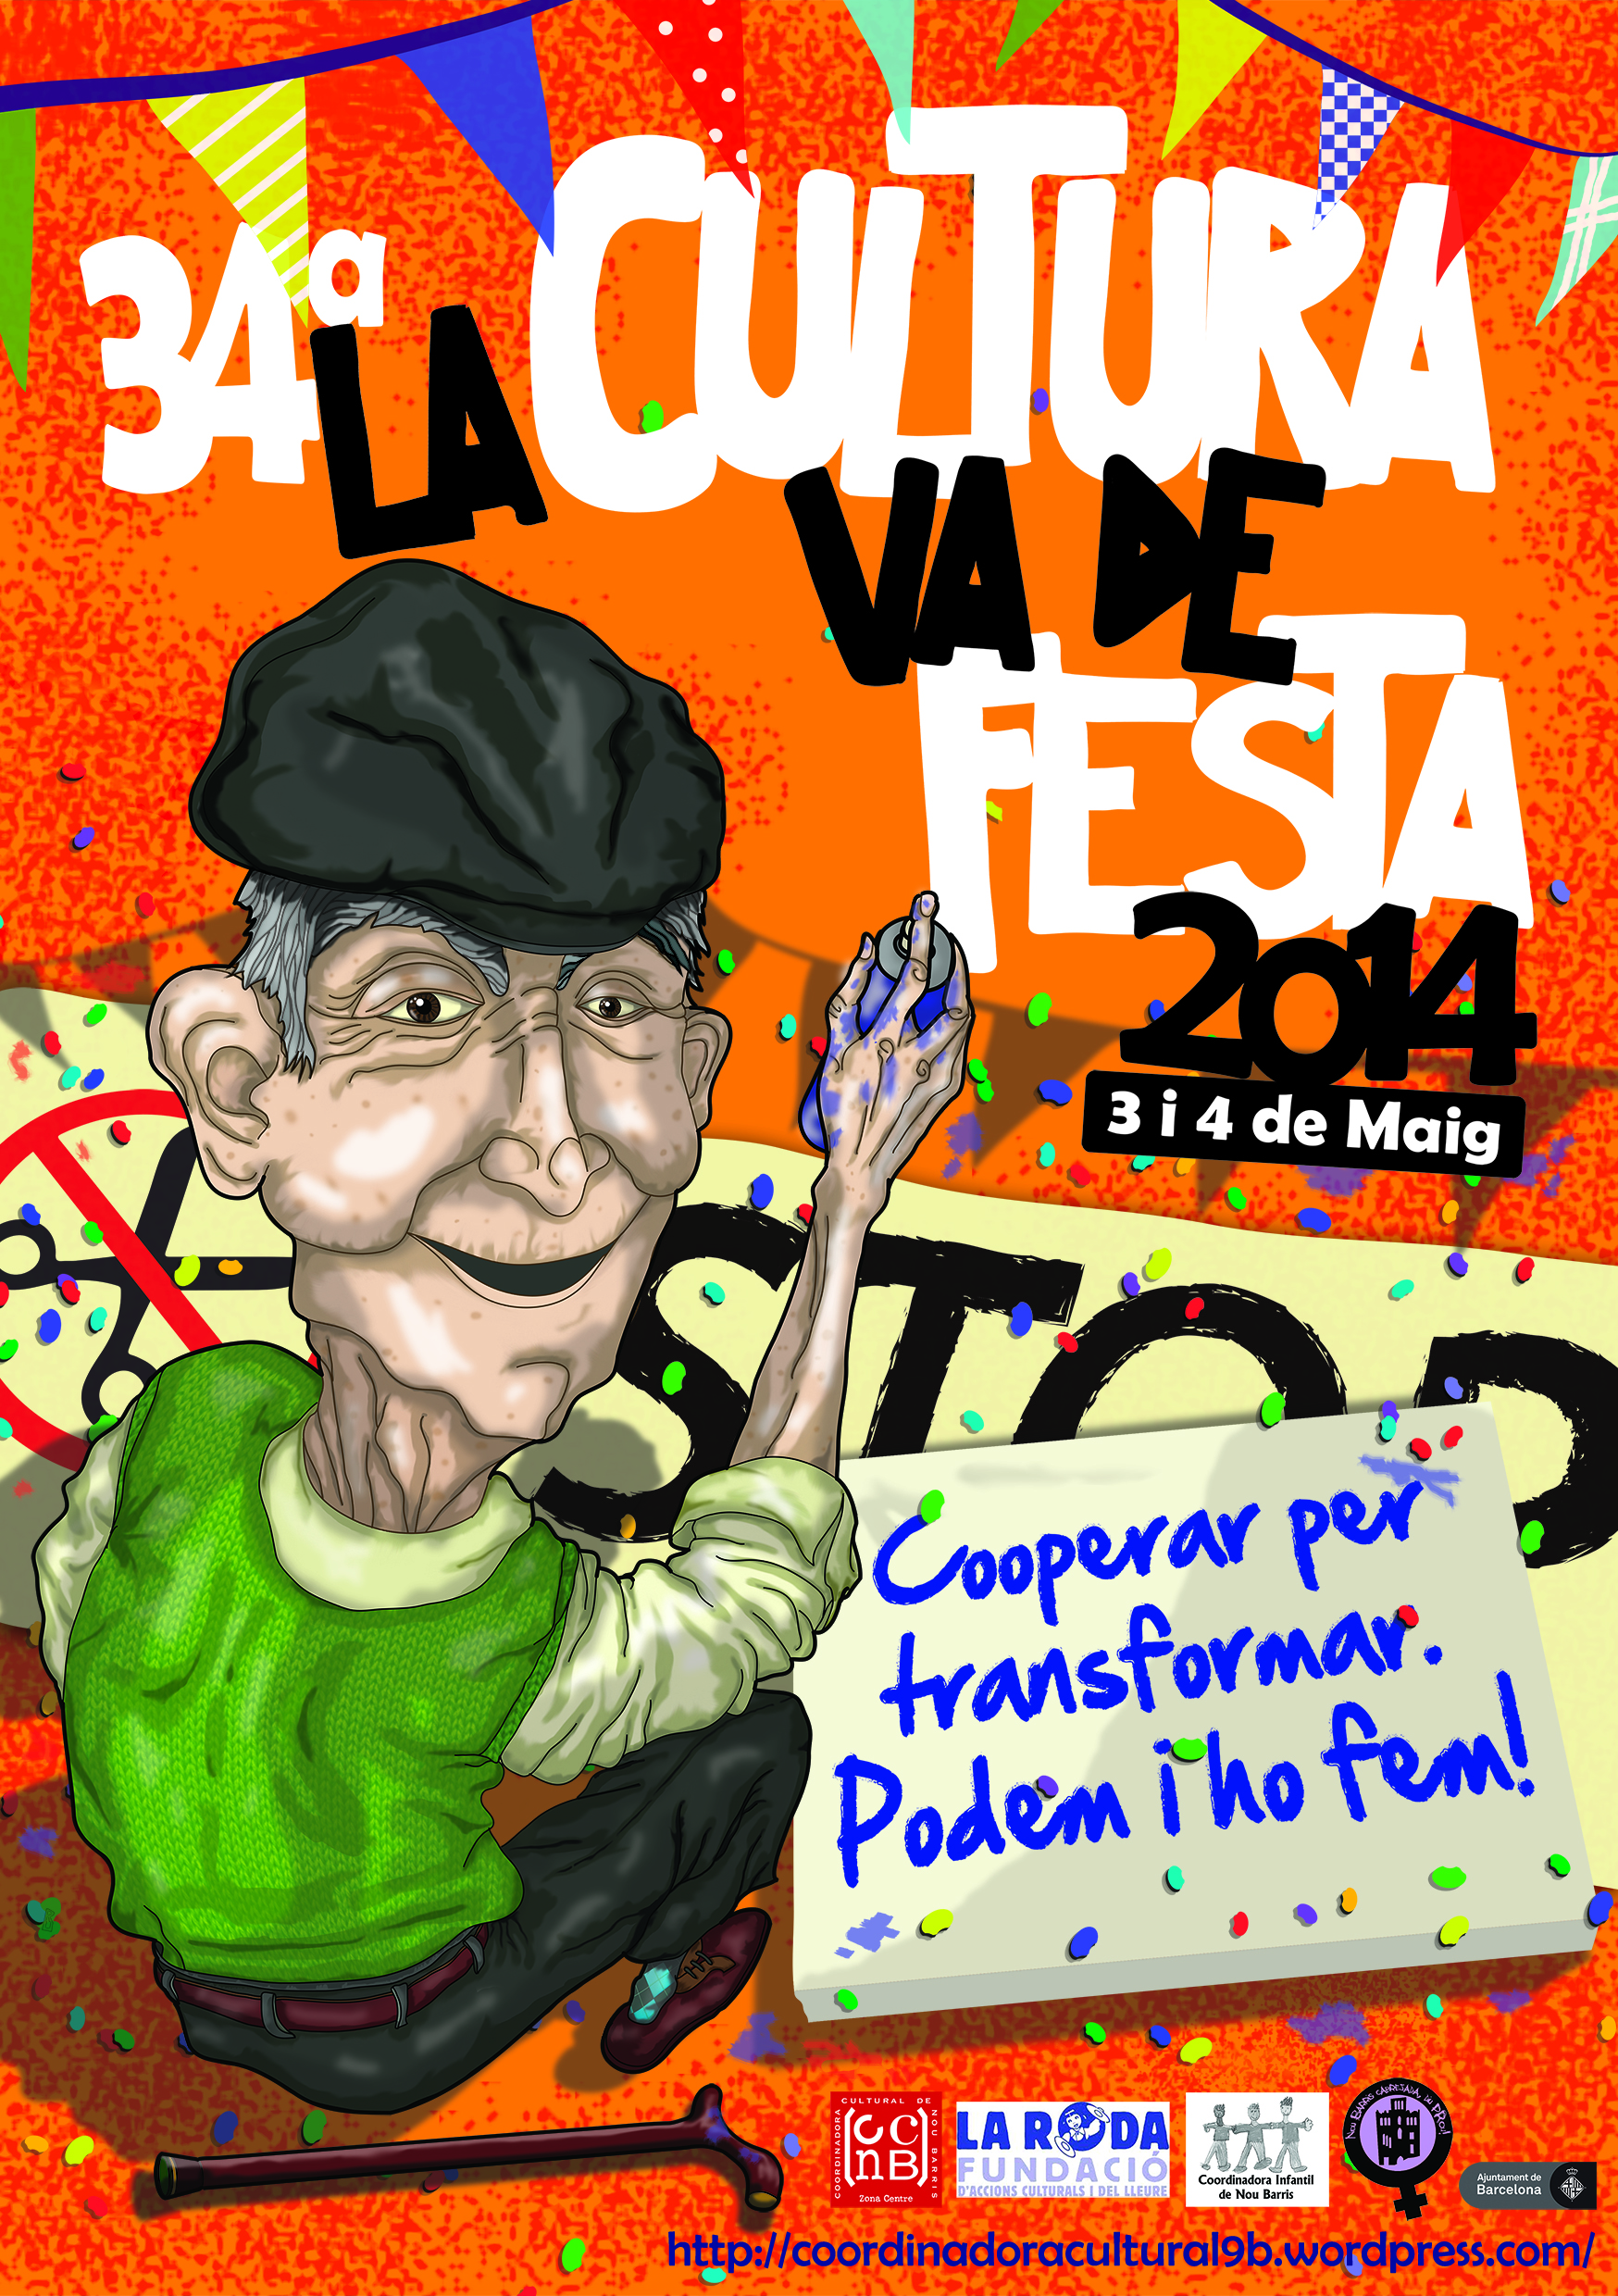 34a La Cultura Va de Festa 3-4 maig al Parc de la Guineueta